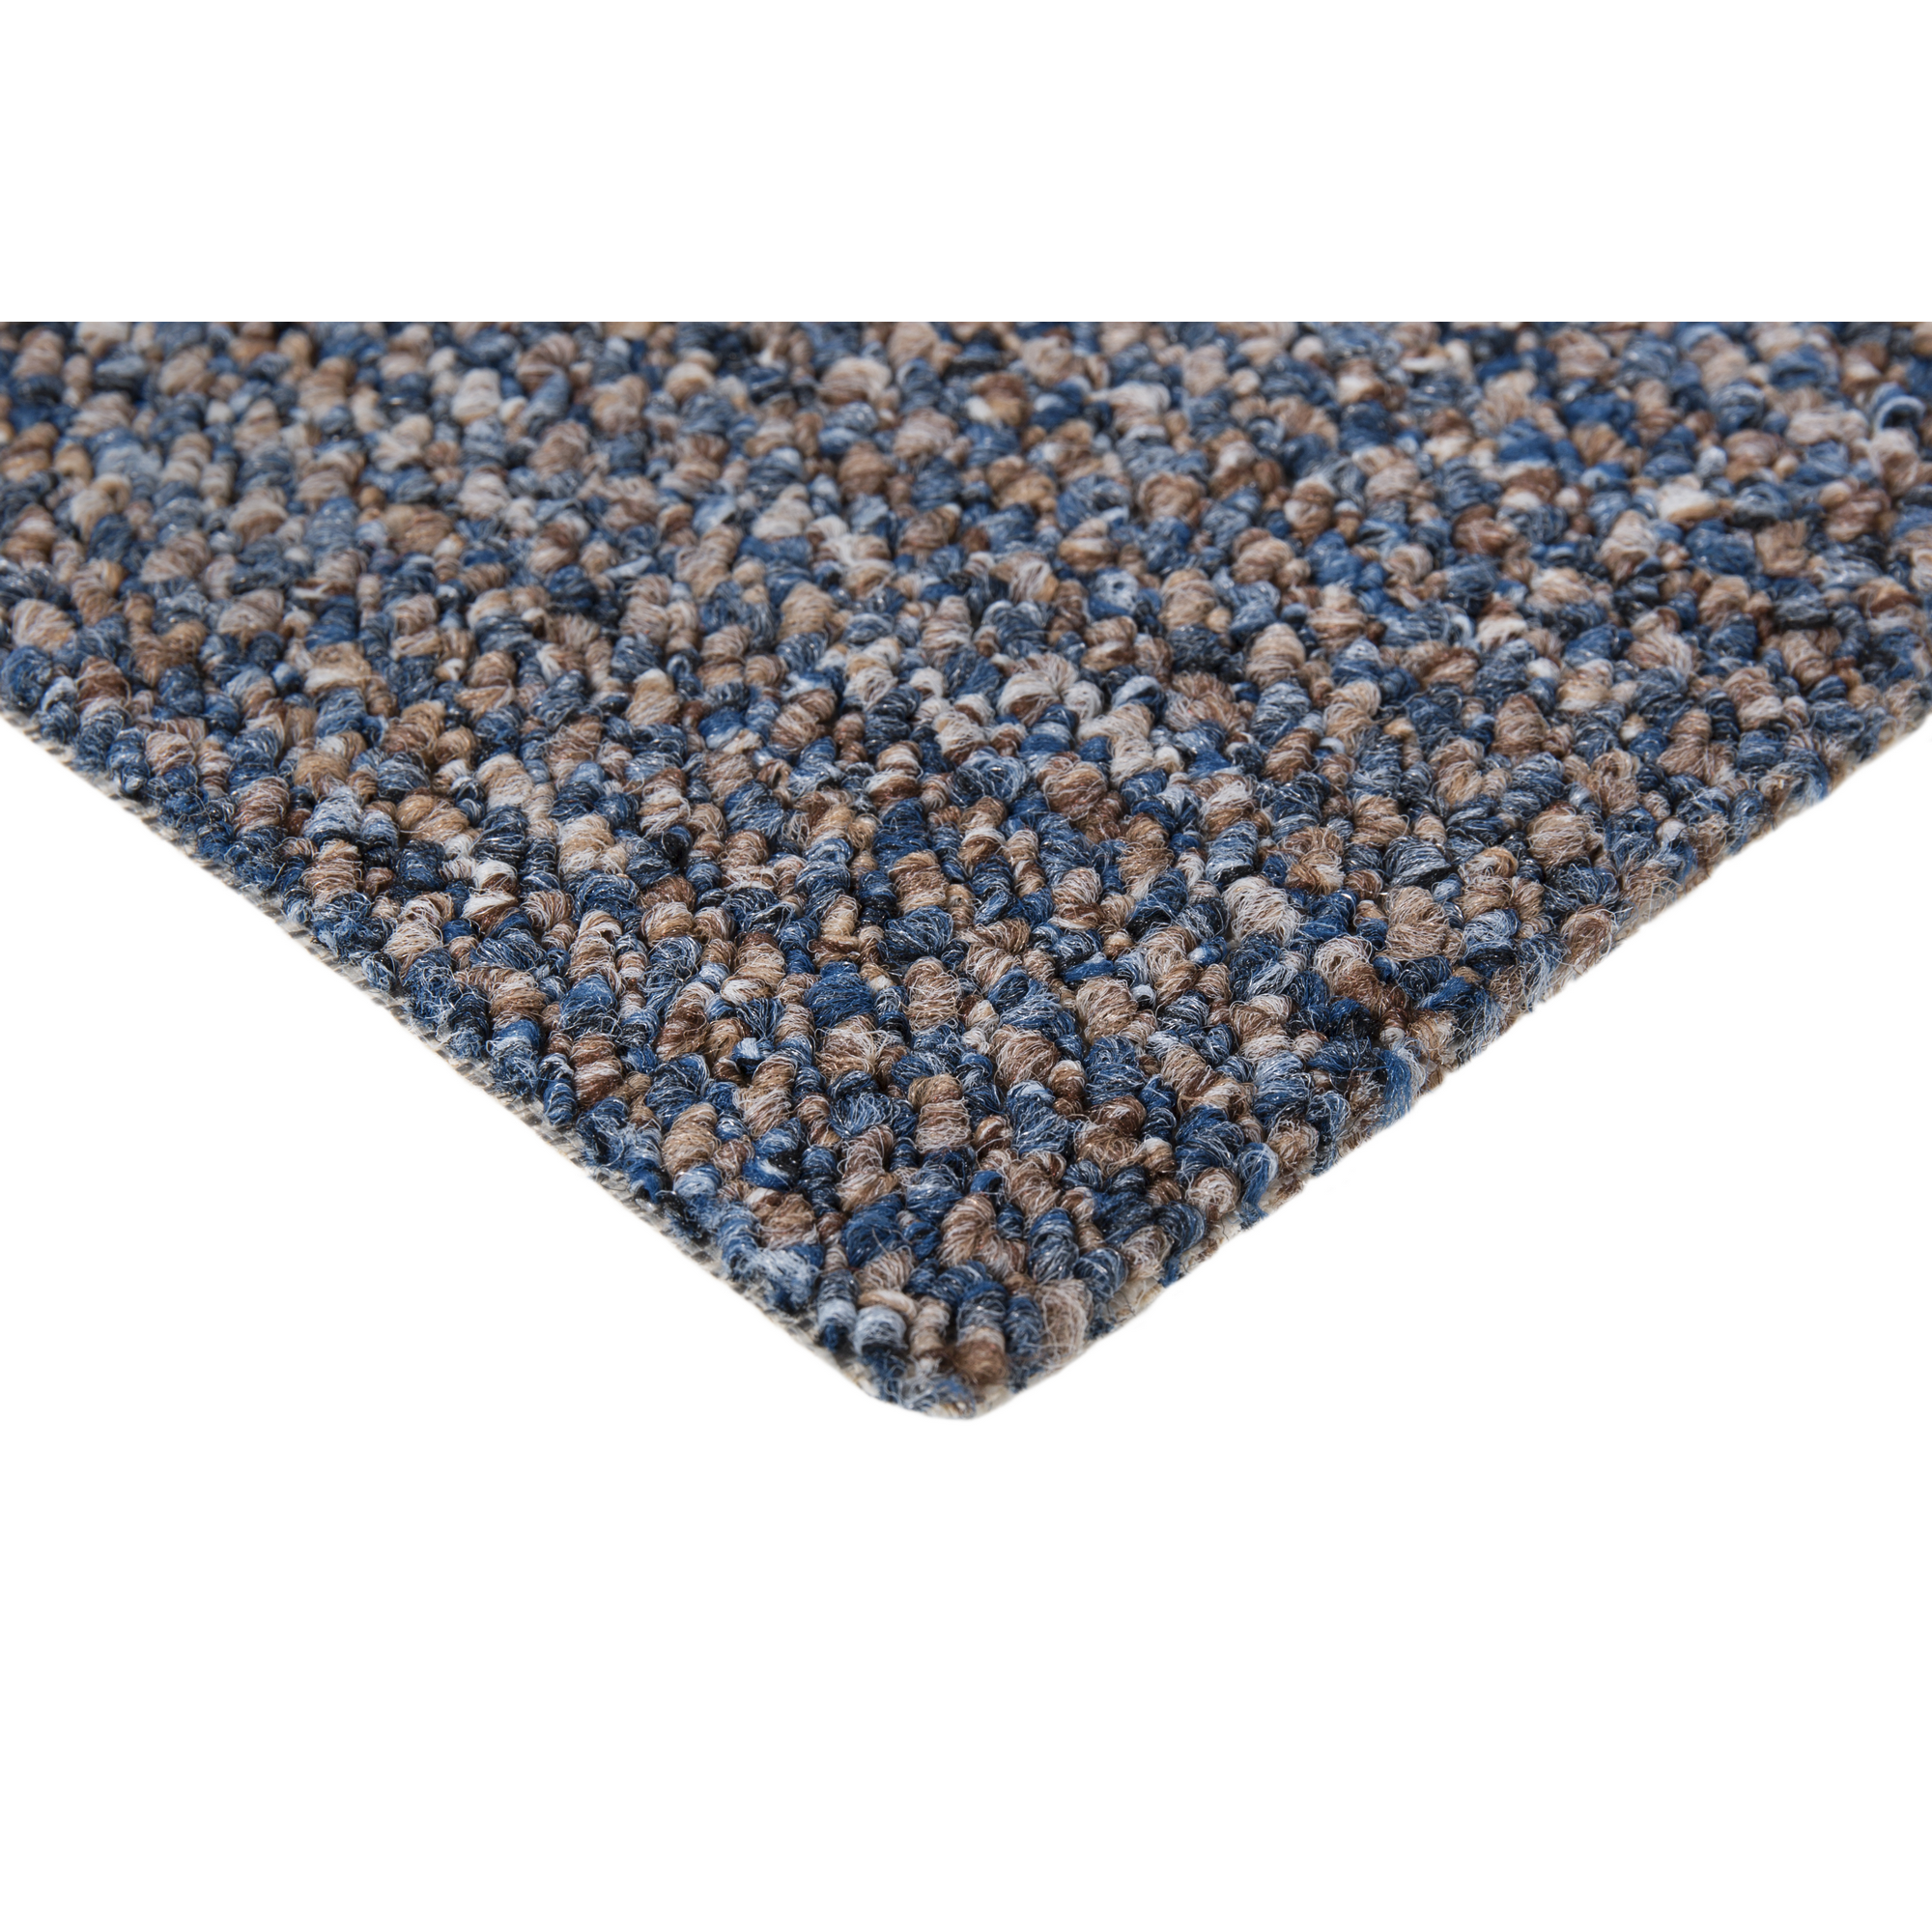 Reinkemeier Schlingen-Teppich "Bennet" Blau, 4m + product picture